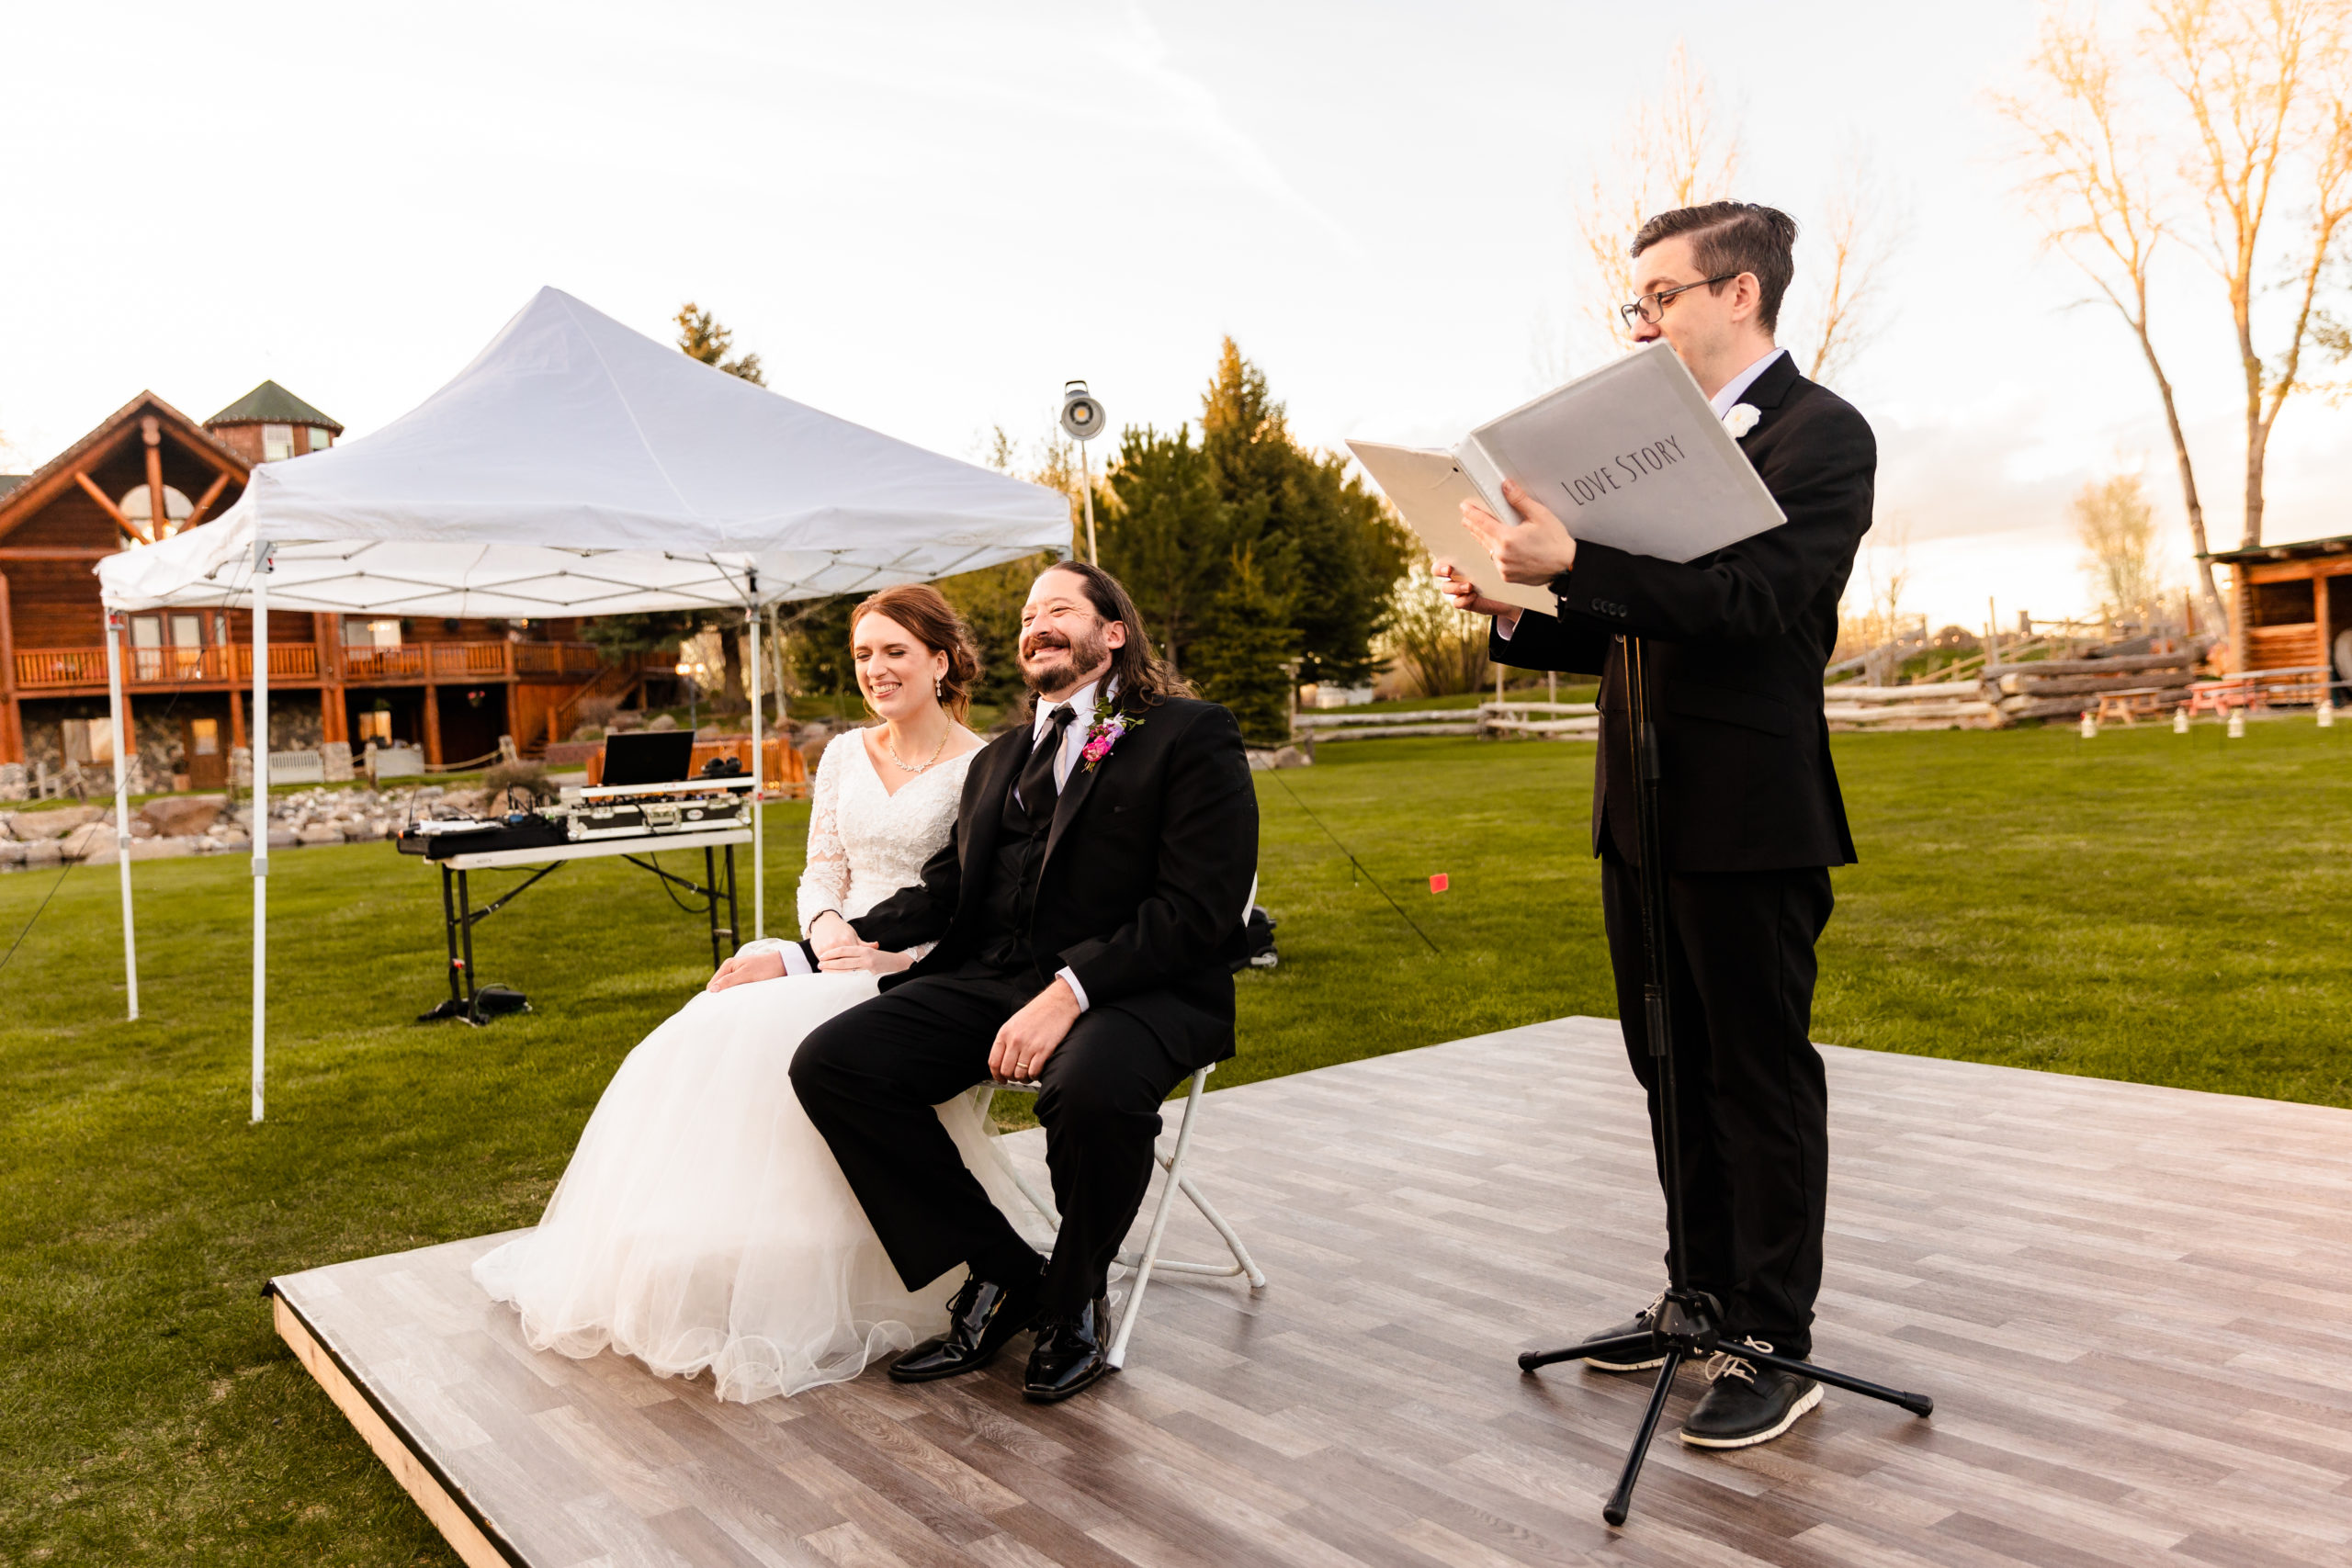 wedding entertainment with Idaho Falls wedding vendor for outdoor wedding